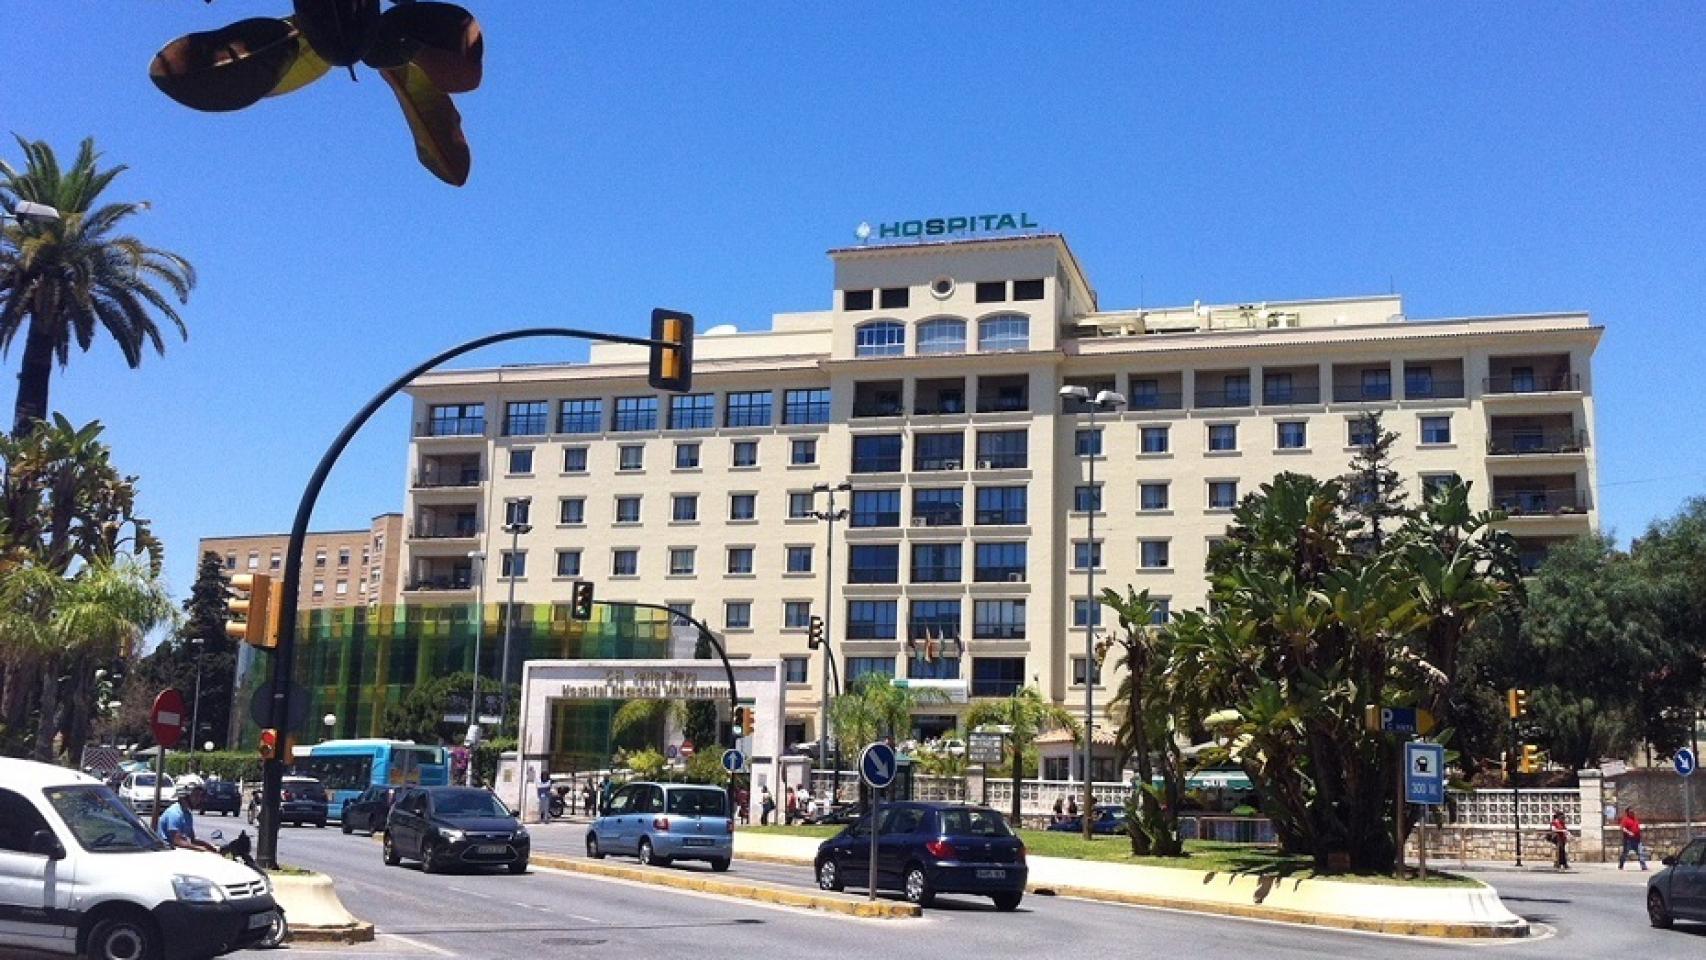 Vista general del Hospital Regional en Málaga.